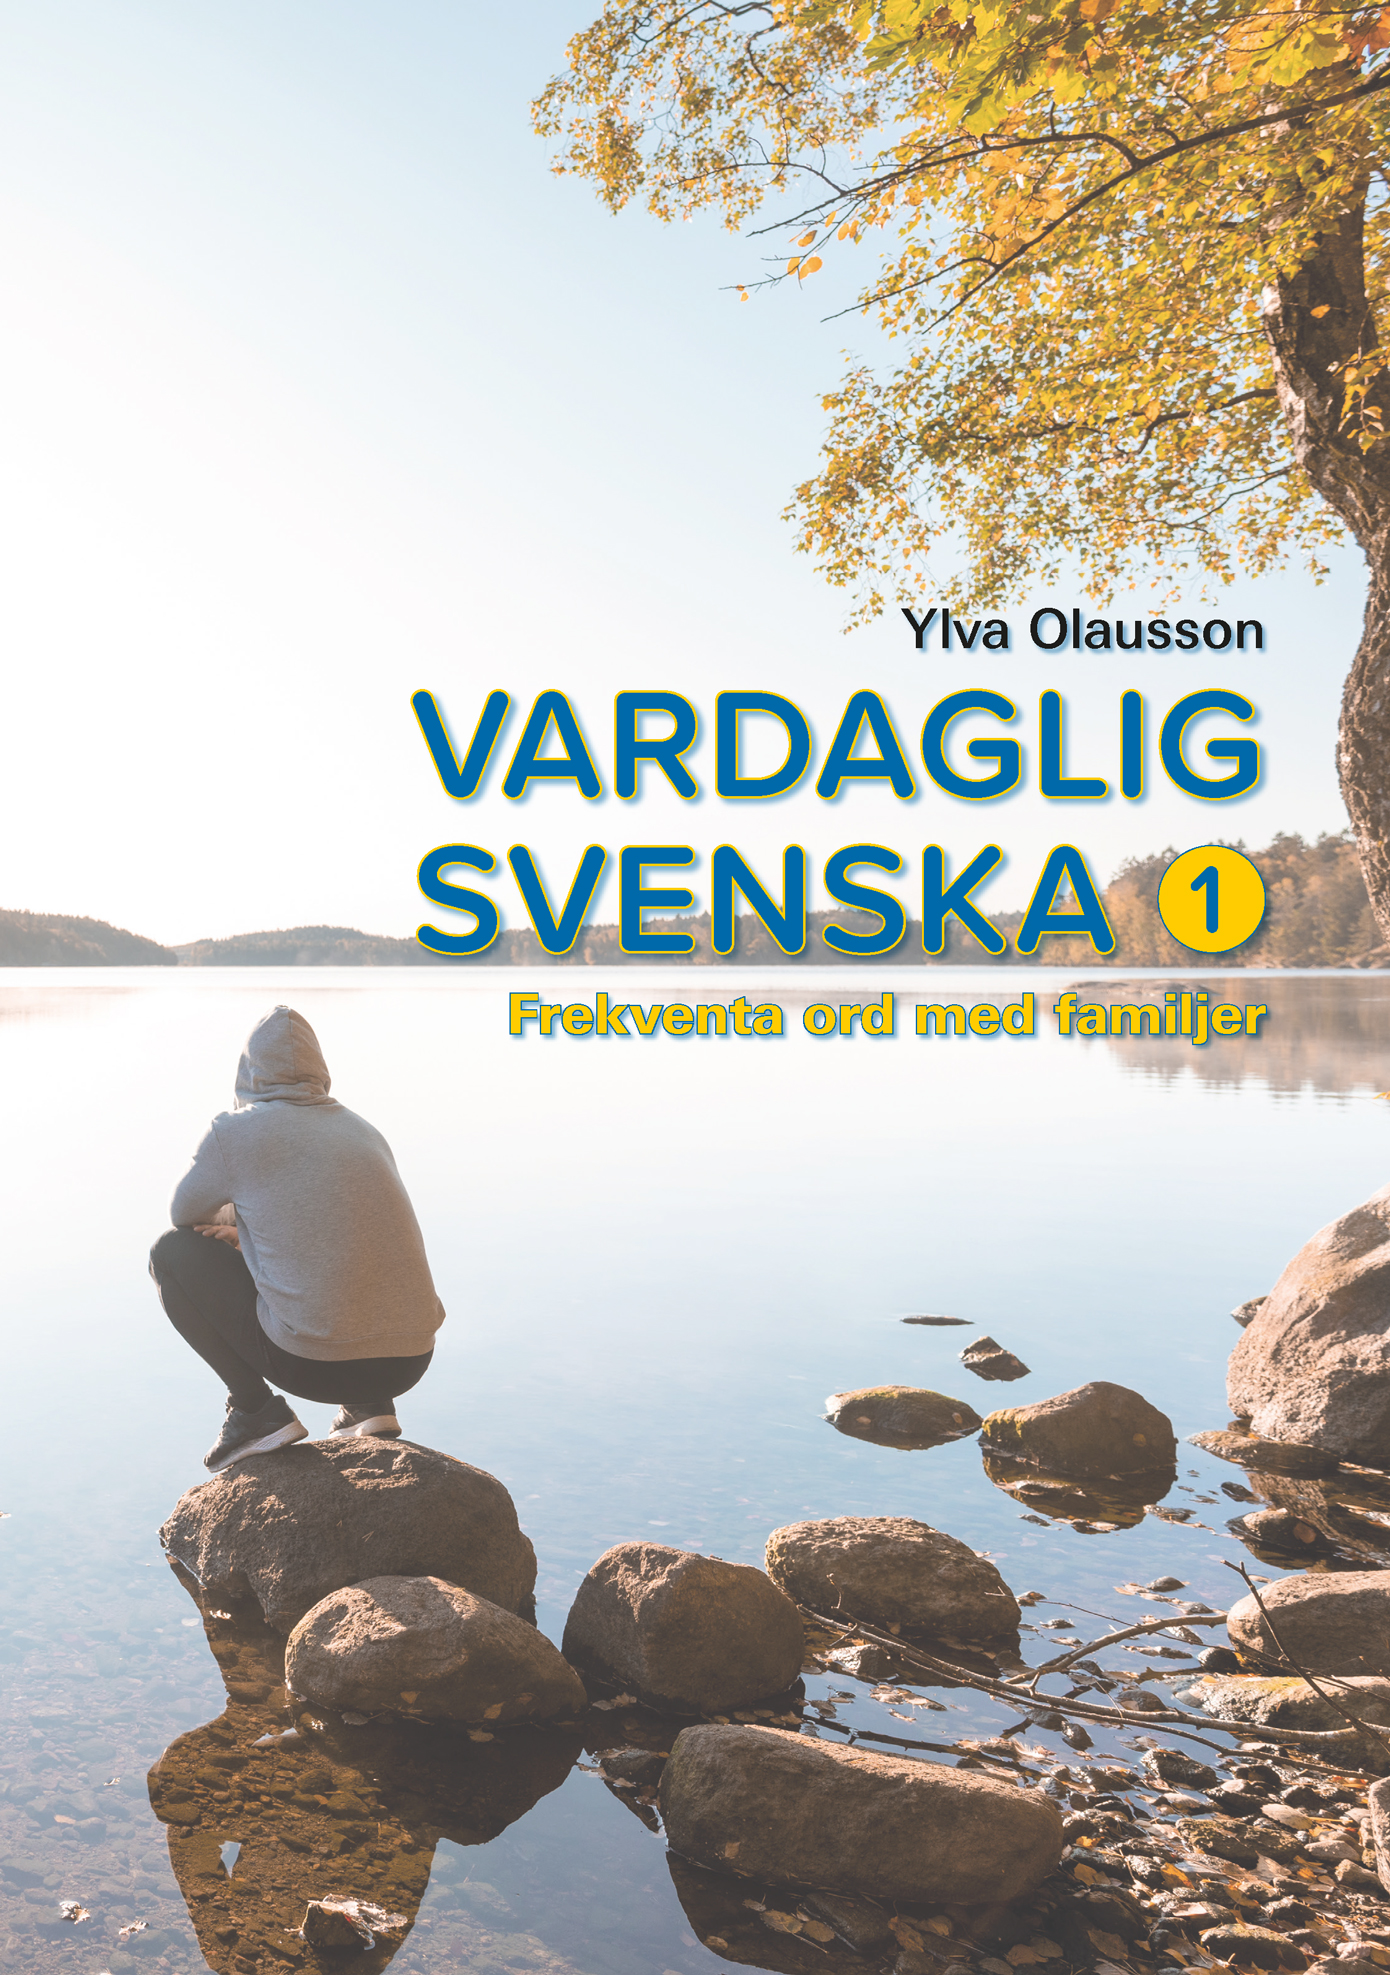 Läs mer om Ylva Olaussons böcker Vardaglig svenska